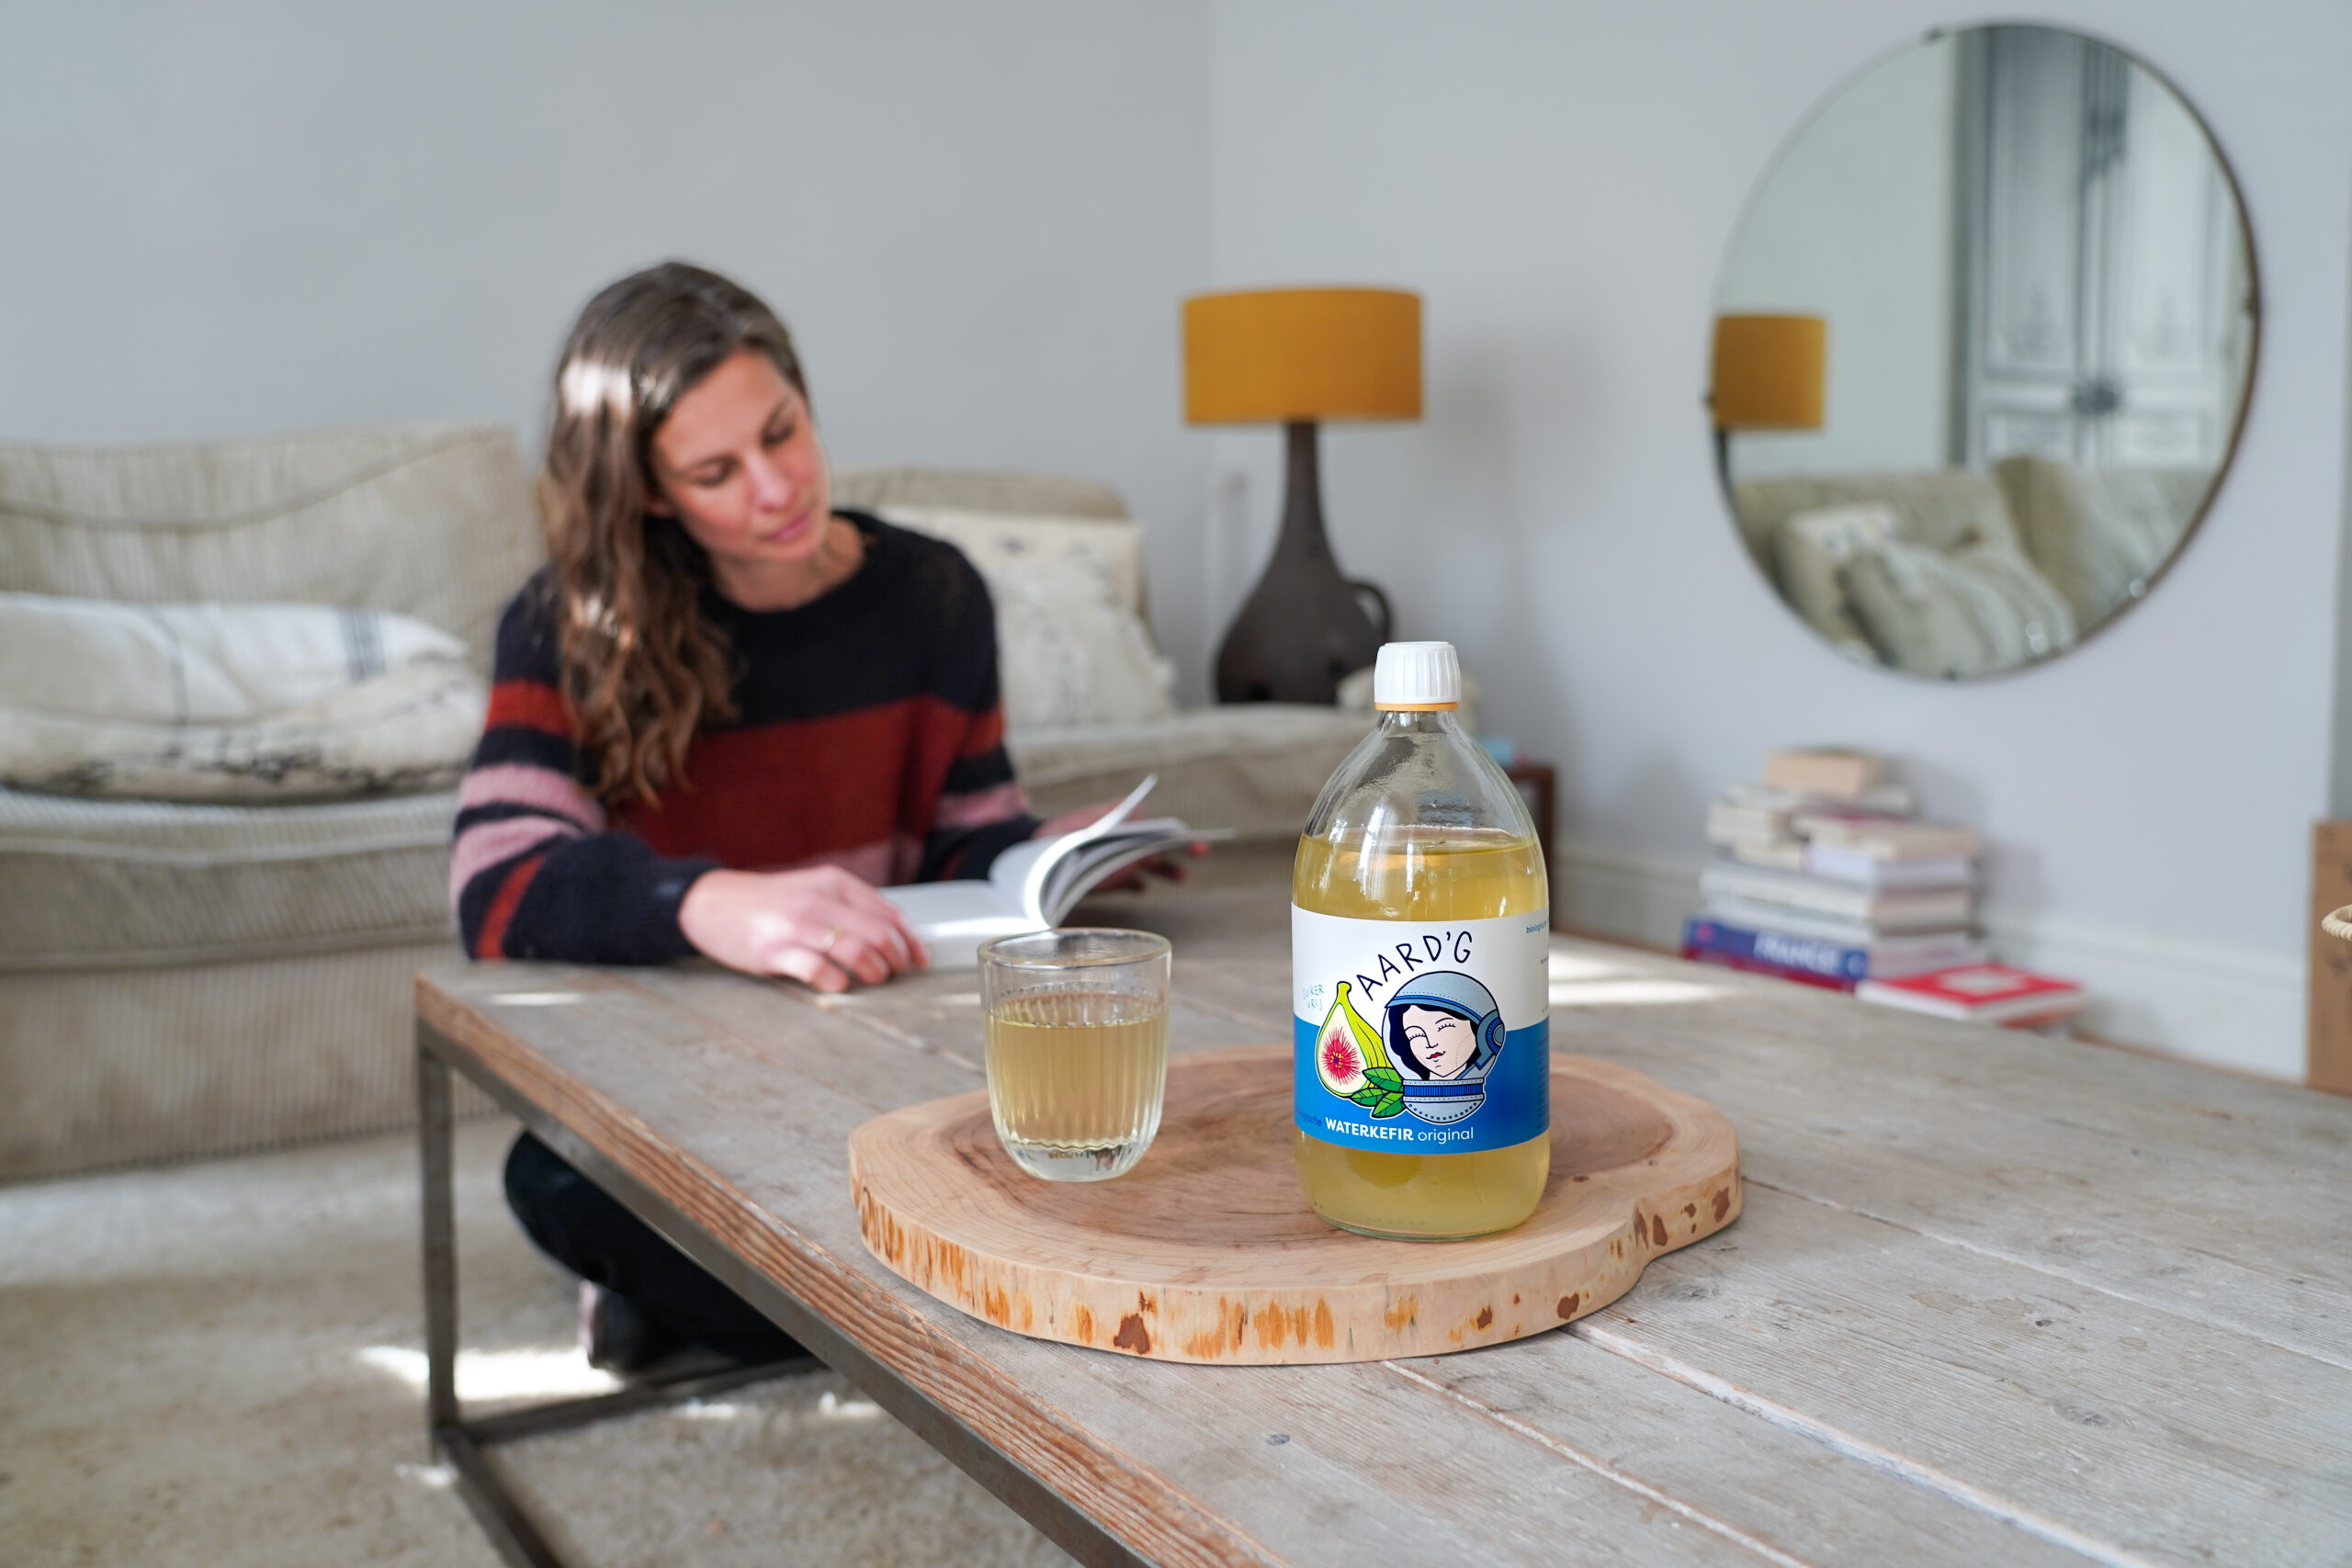 Een fles waterkefir original van Aard'g staat op een tafel op een houten plankje. Een vrouw leest een magazine aan dezelfde tafel.